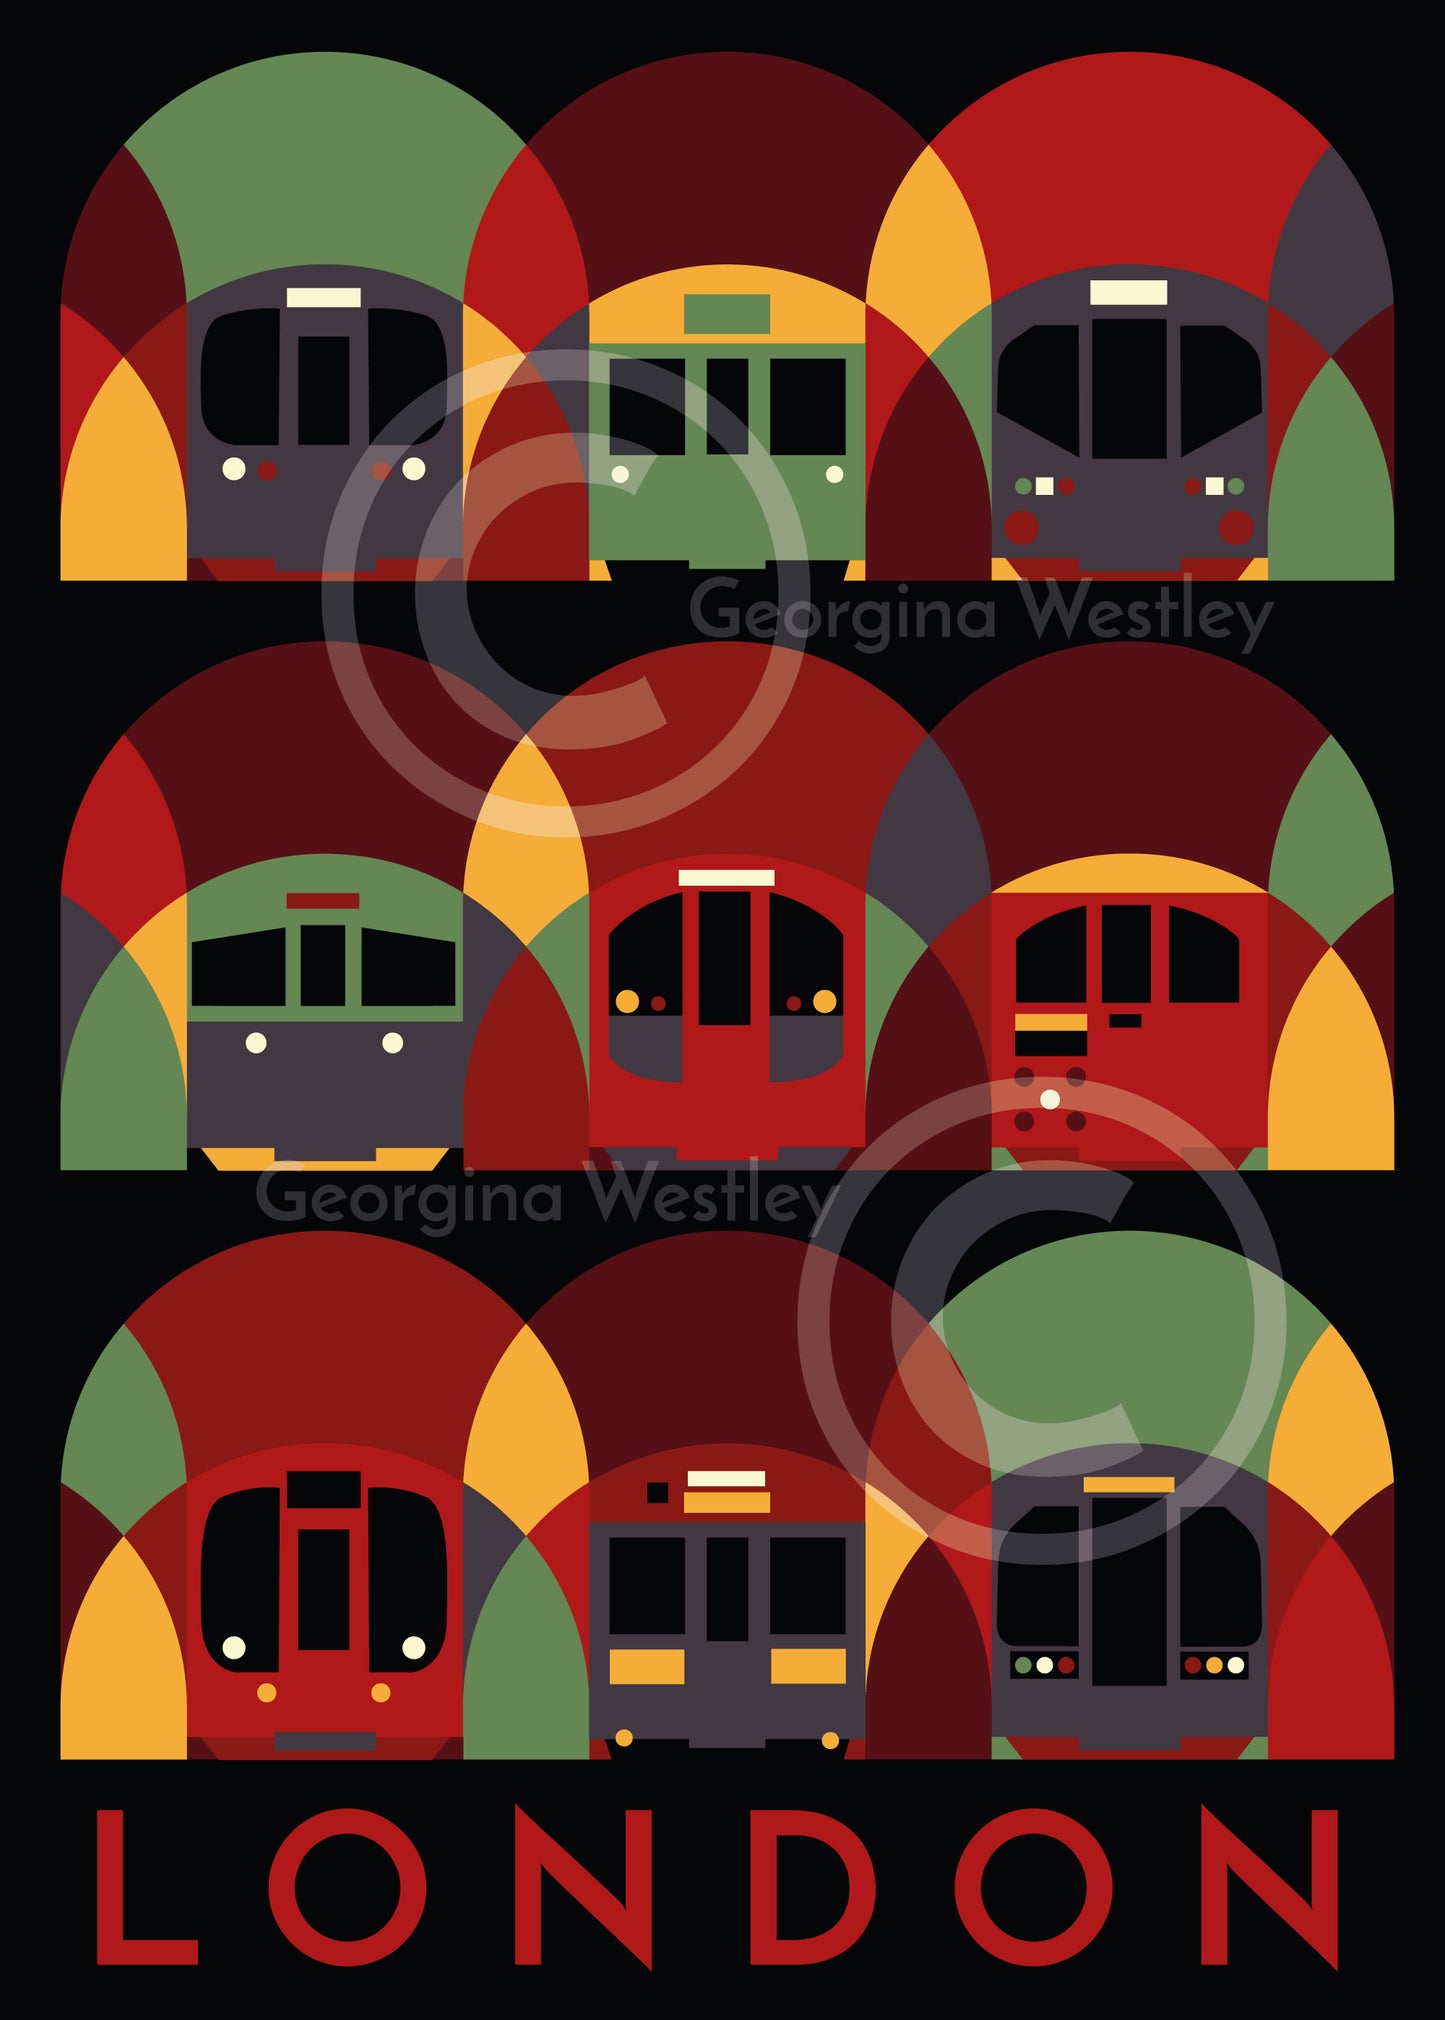 London Underground Art Print (Routemaster Red Colourway)